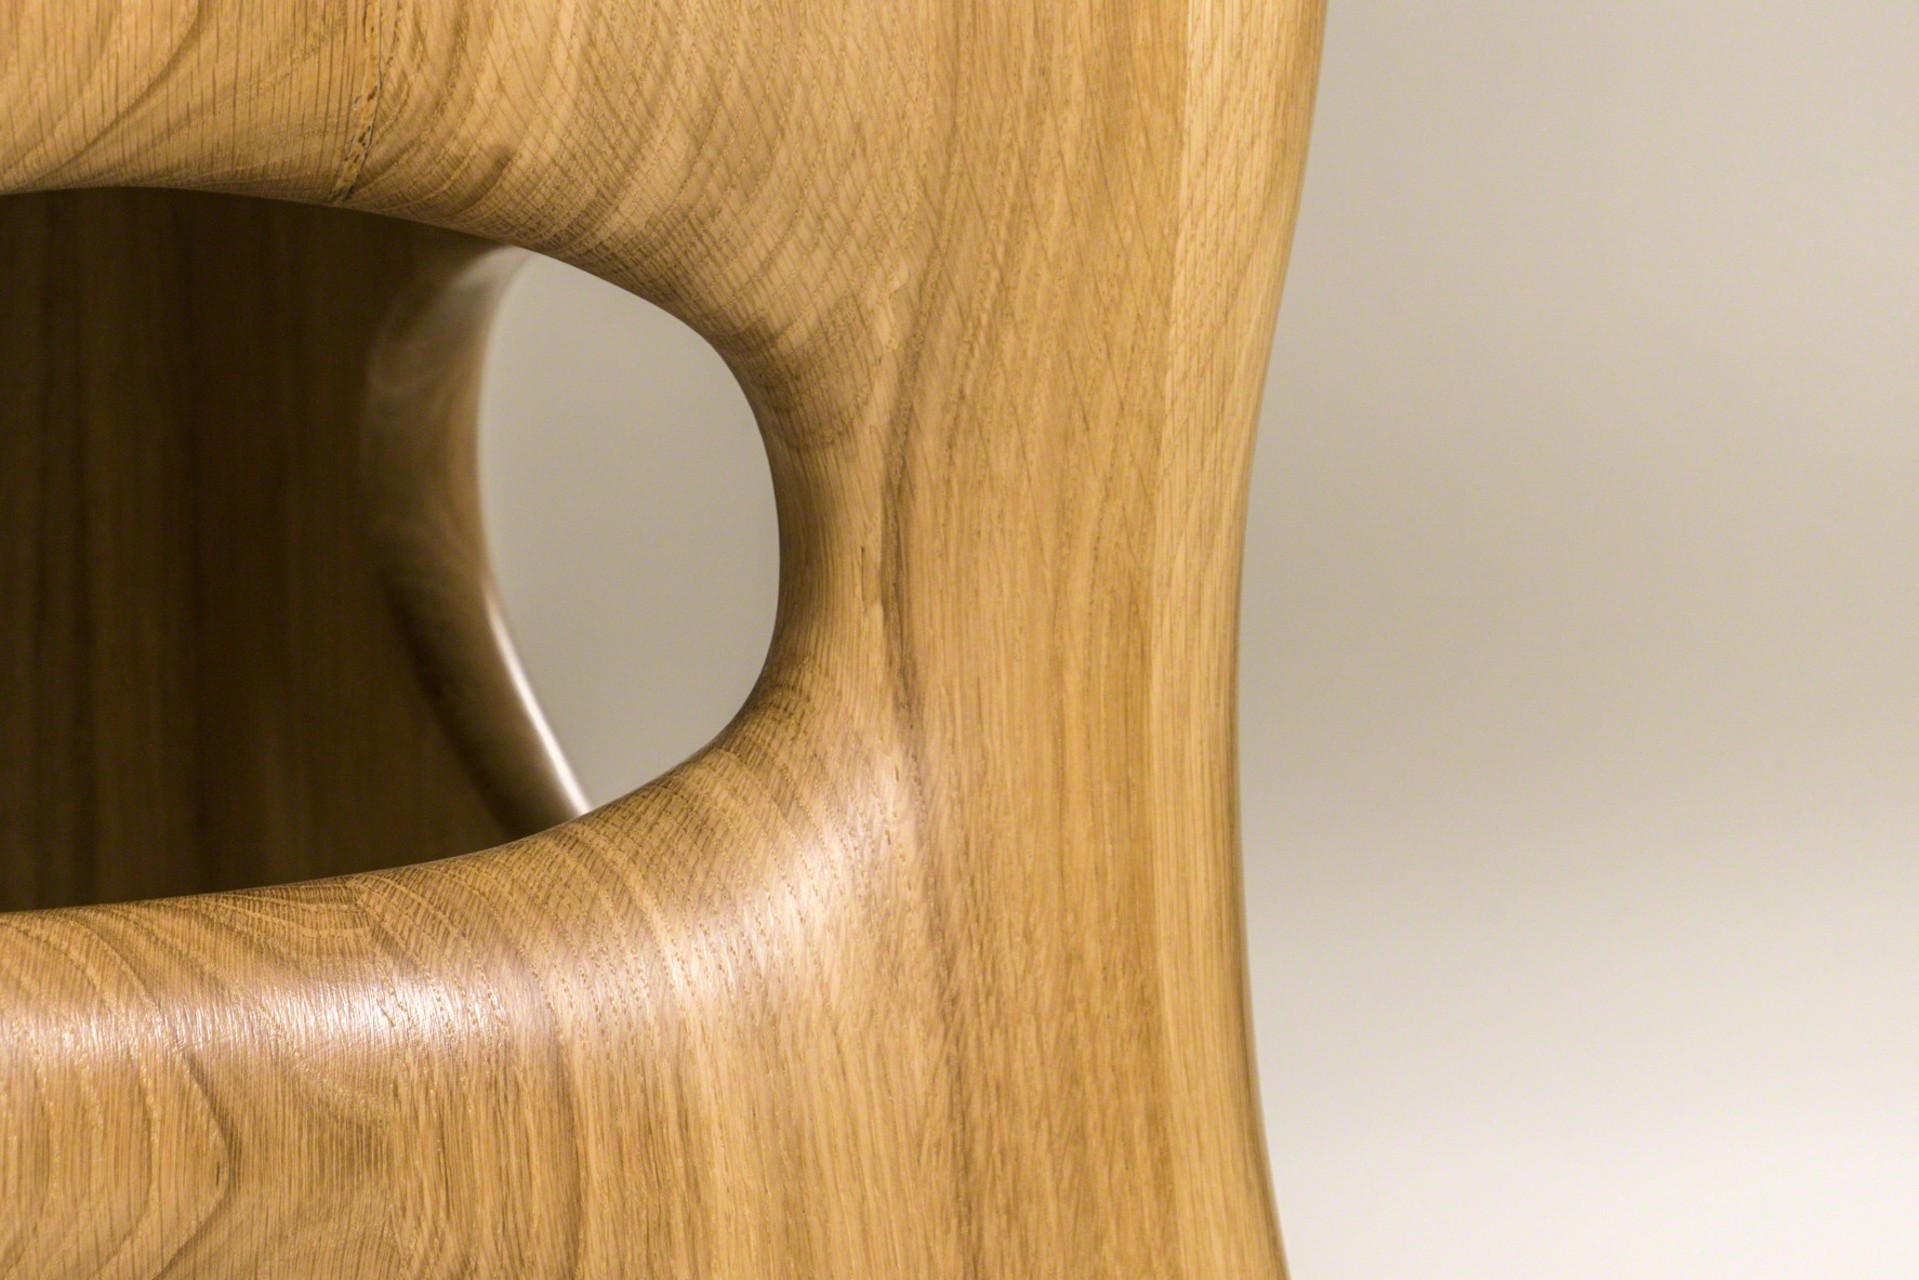 "Osselet" Oak stool by Jacques Jarrige